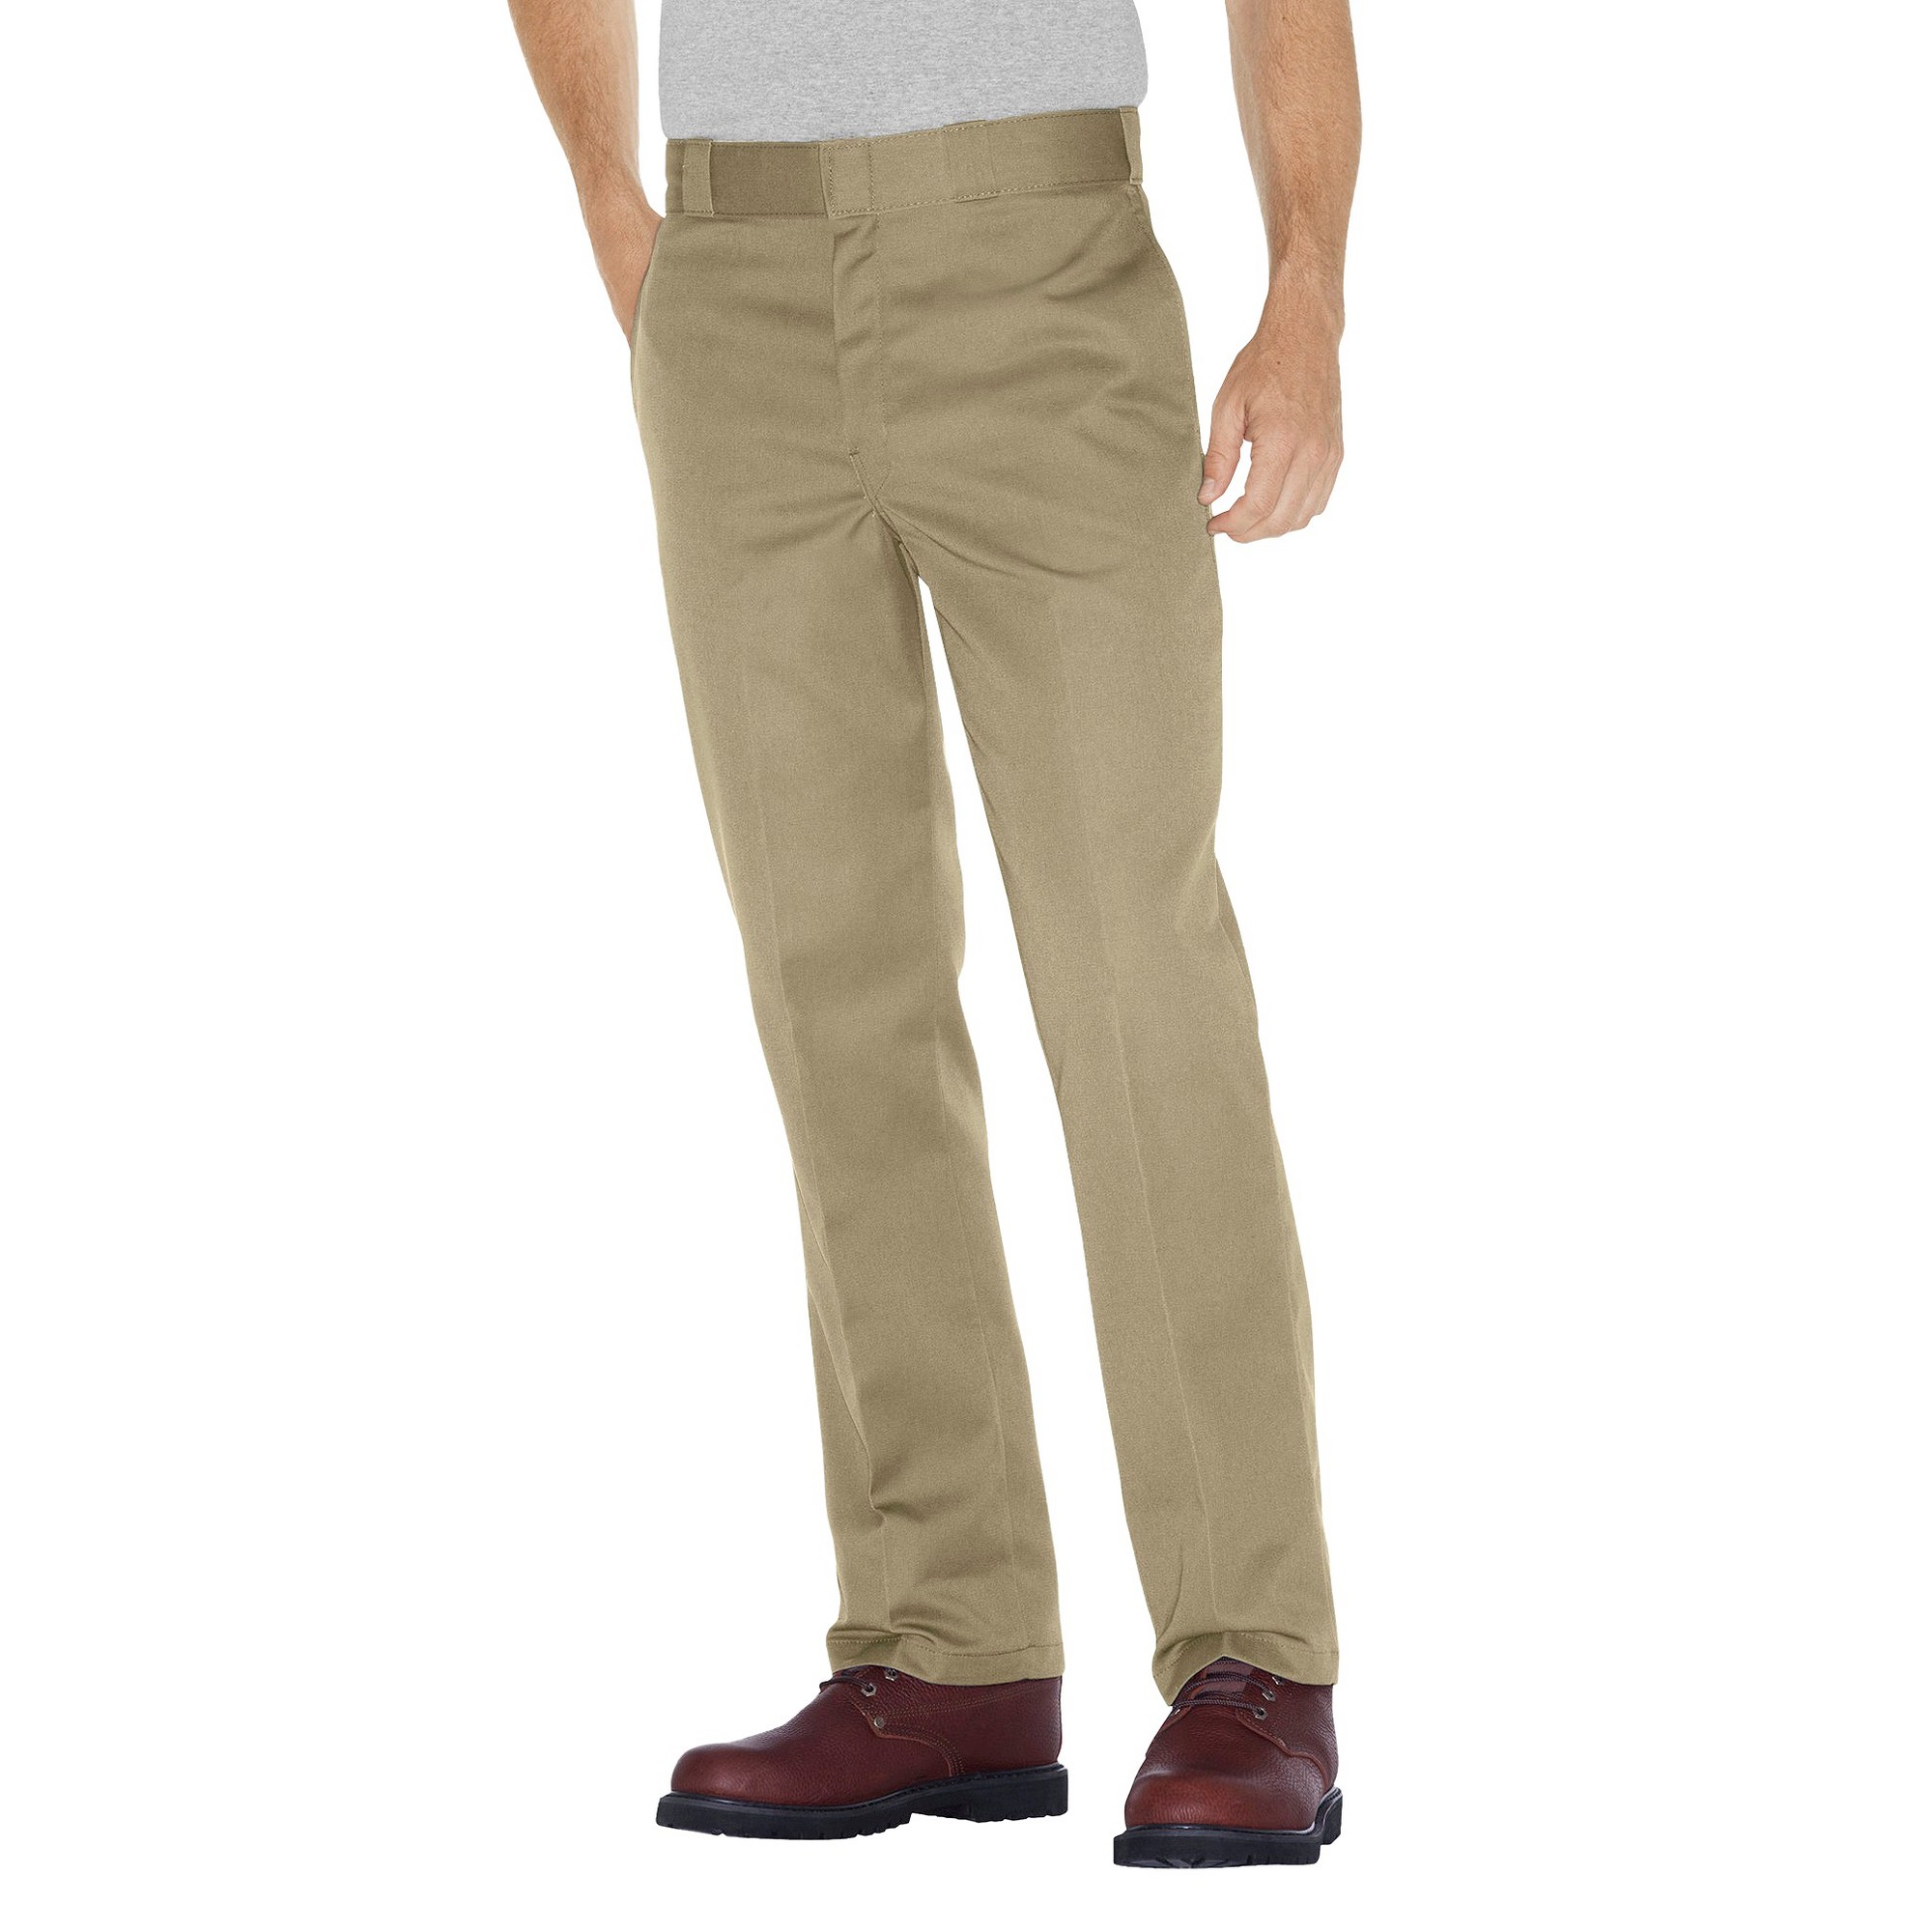 Dickies - Men's Big & Tall Original Fit 874 Twill Pants Khaki 50x34, Green